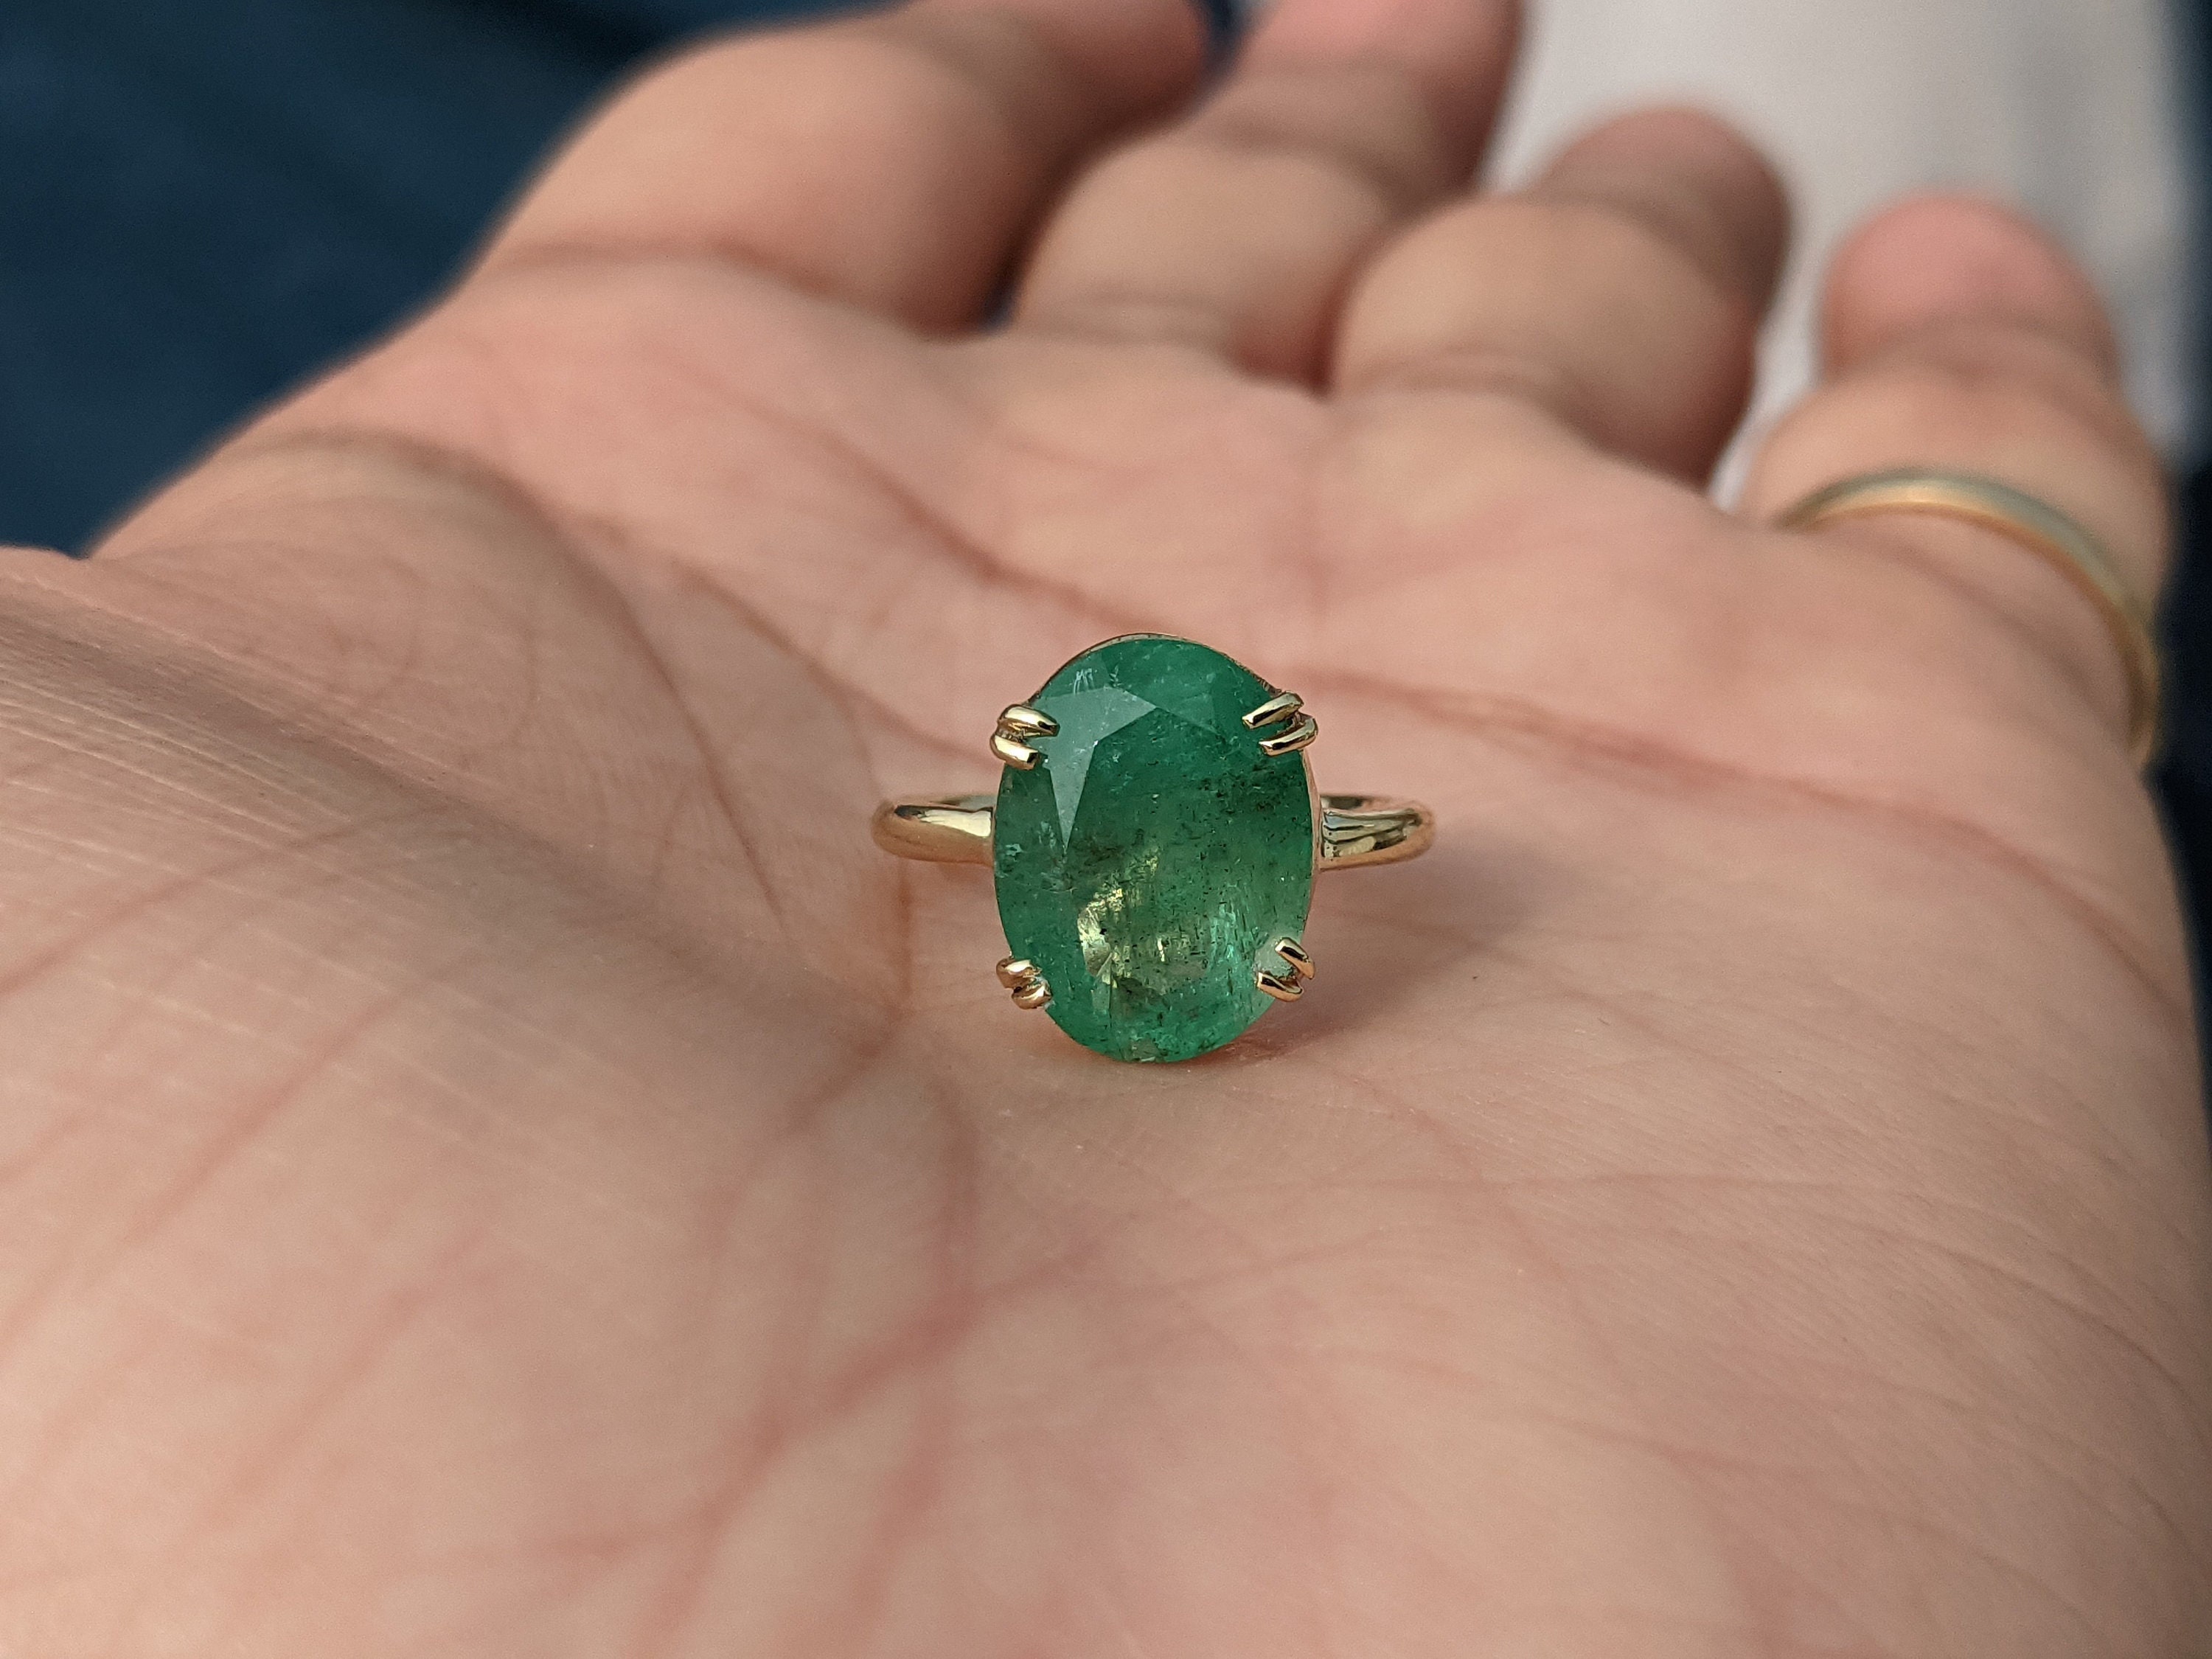 Panna Ring Natural Stone Emerald: Buy Panna Ring Natural Stone Emerald  Online in India on Snapdeal